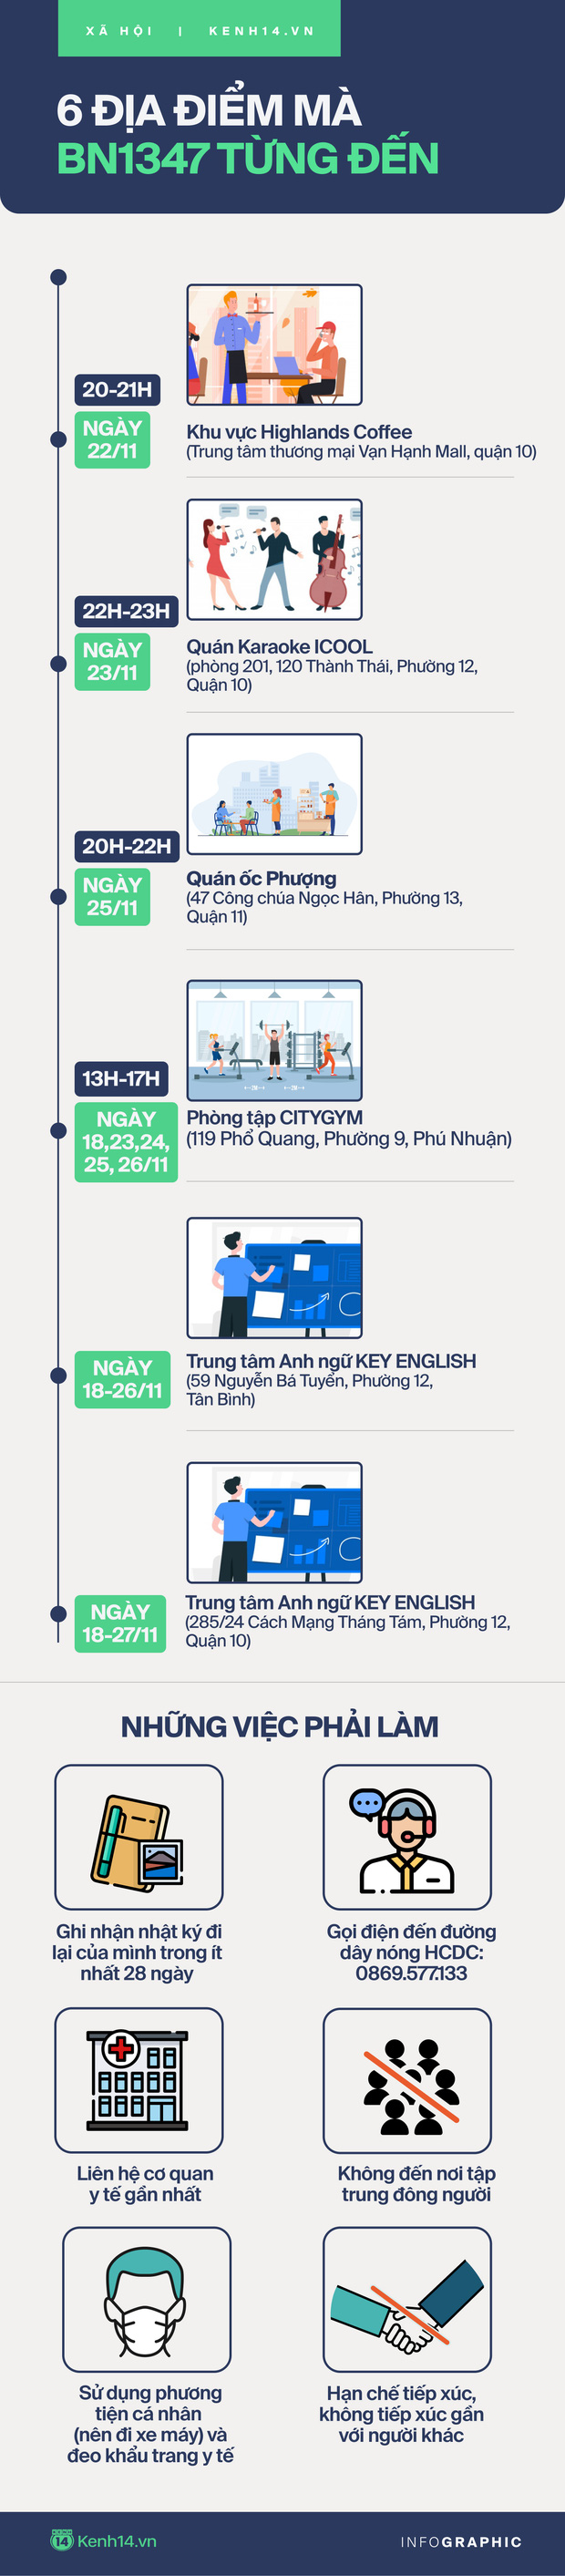 Infographic: Hướng dẫn biện pháp phòng dịch đối với những người từng ghé 6 địa điểm mà BN1347 đã đến - Ảnh 1.